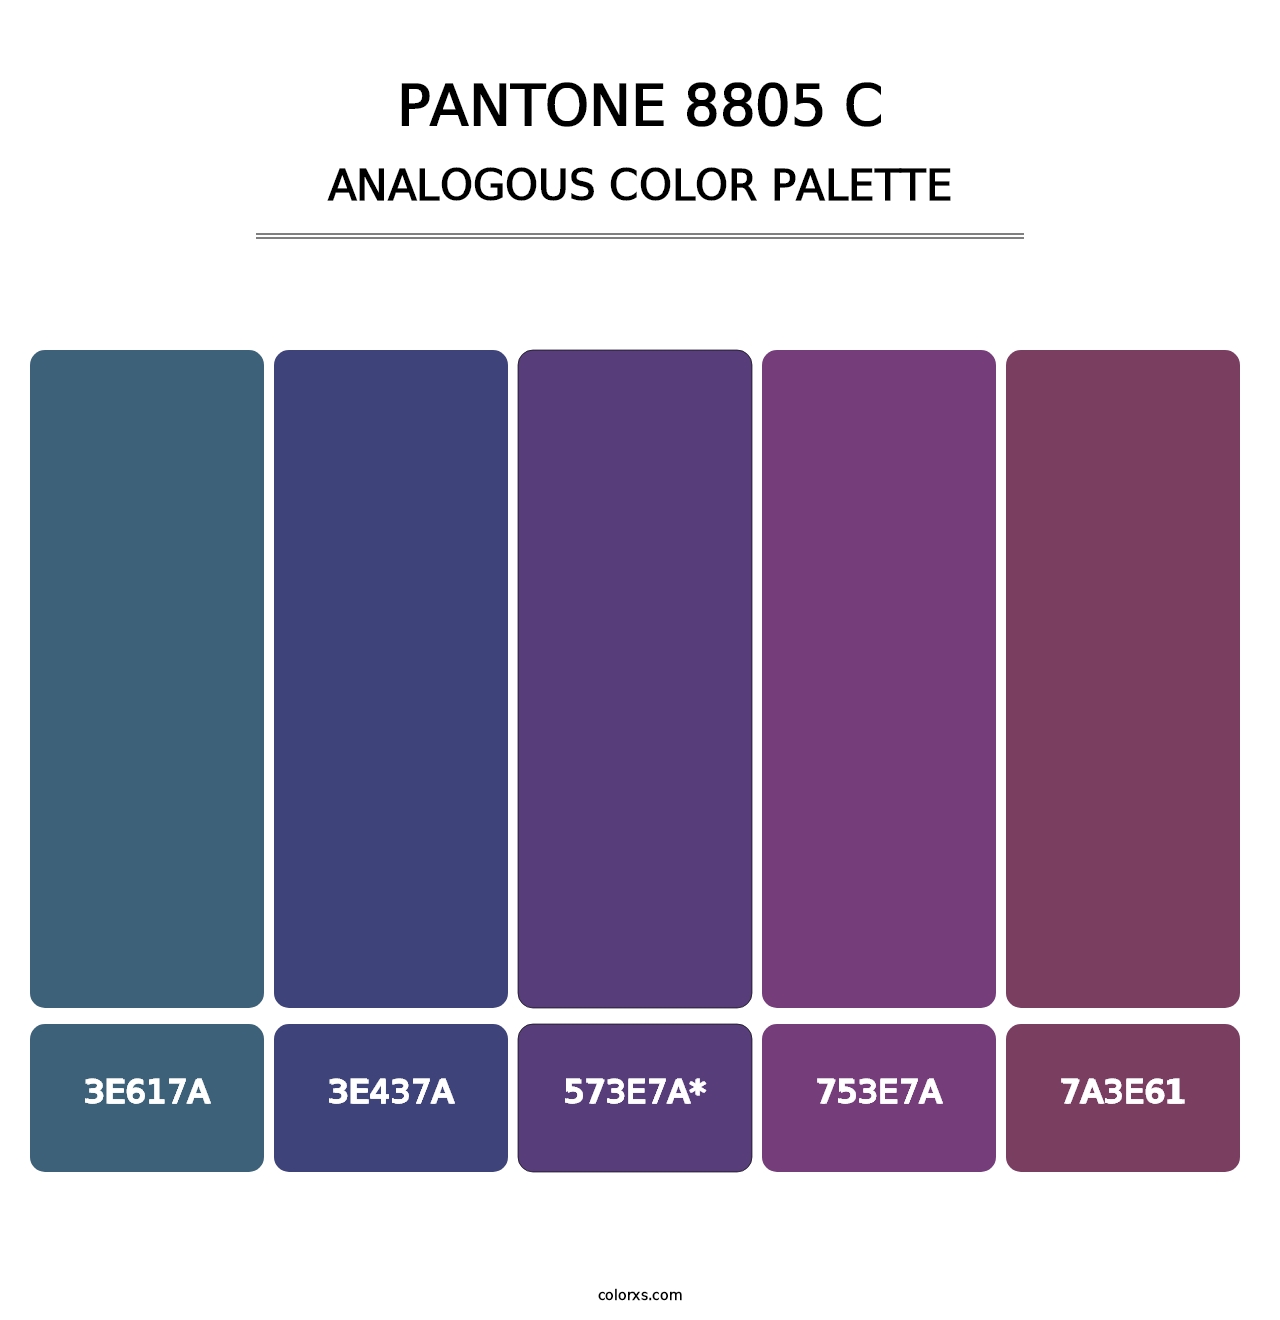 PANTONE 8805 C - Analogous Color Palette